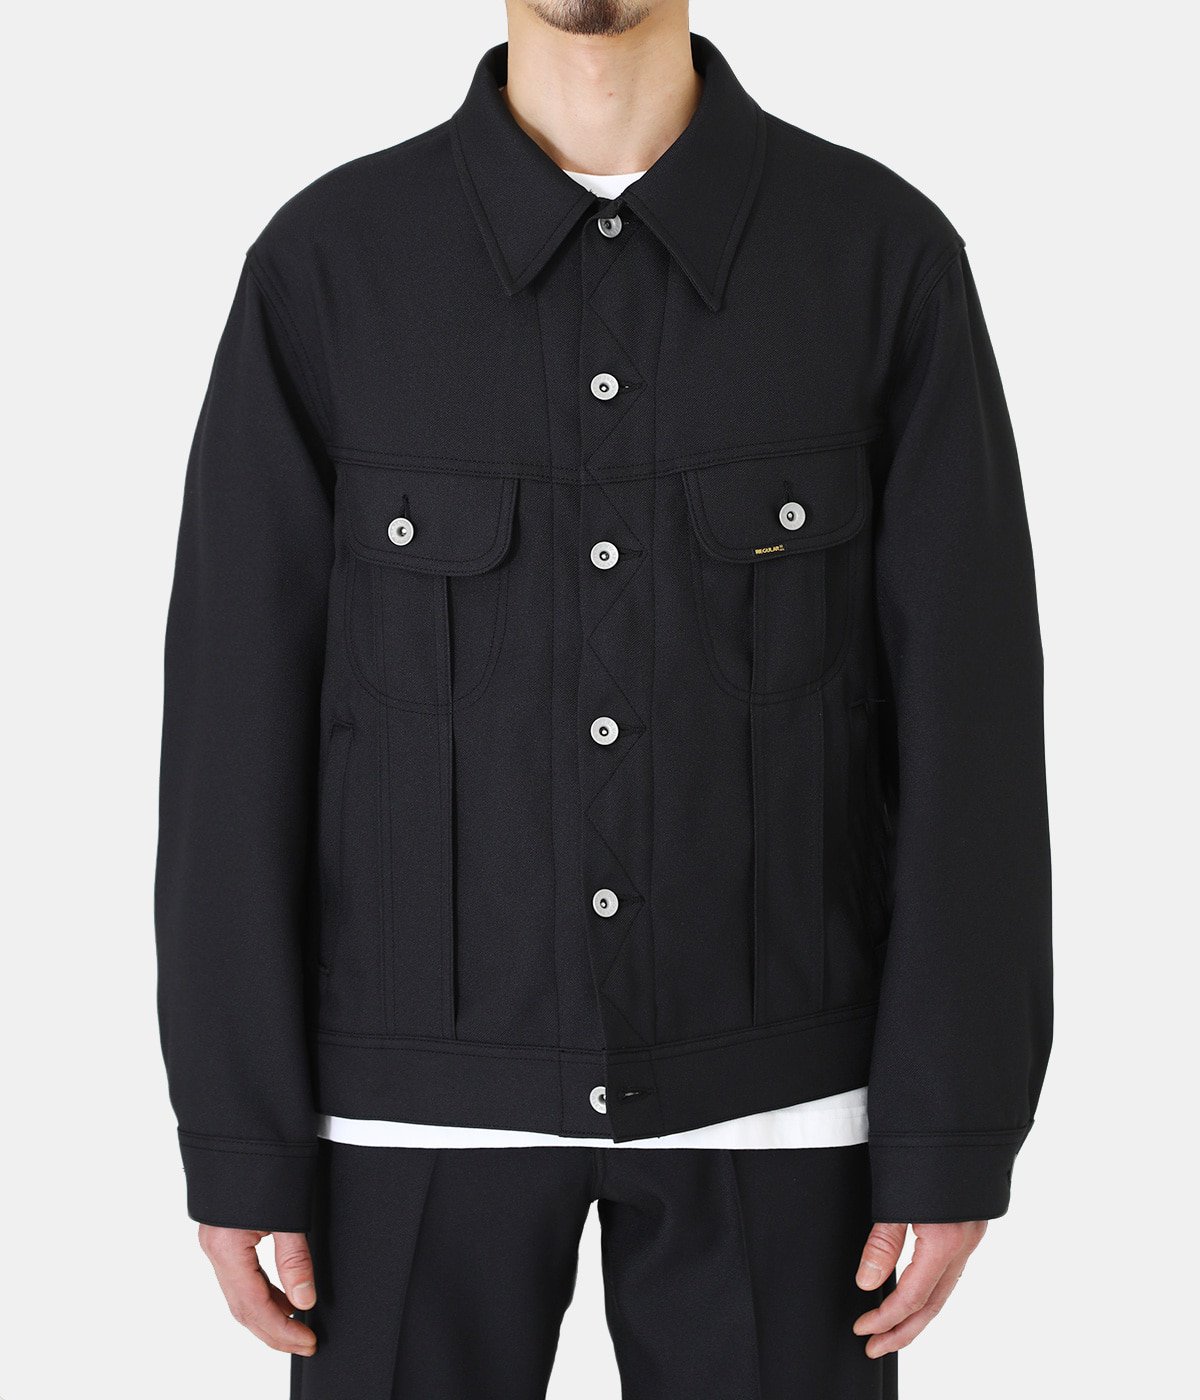 DAIRIKU 20ss "REGULAR" Polyester Jacket